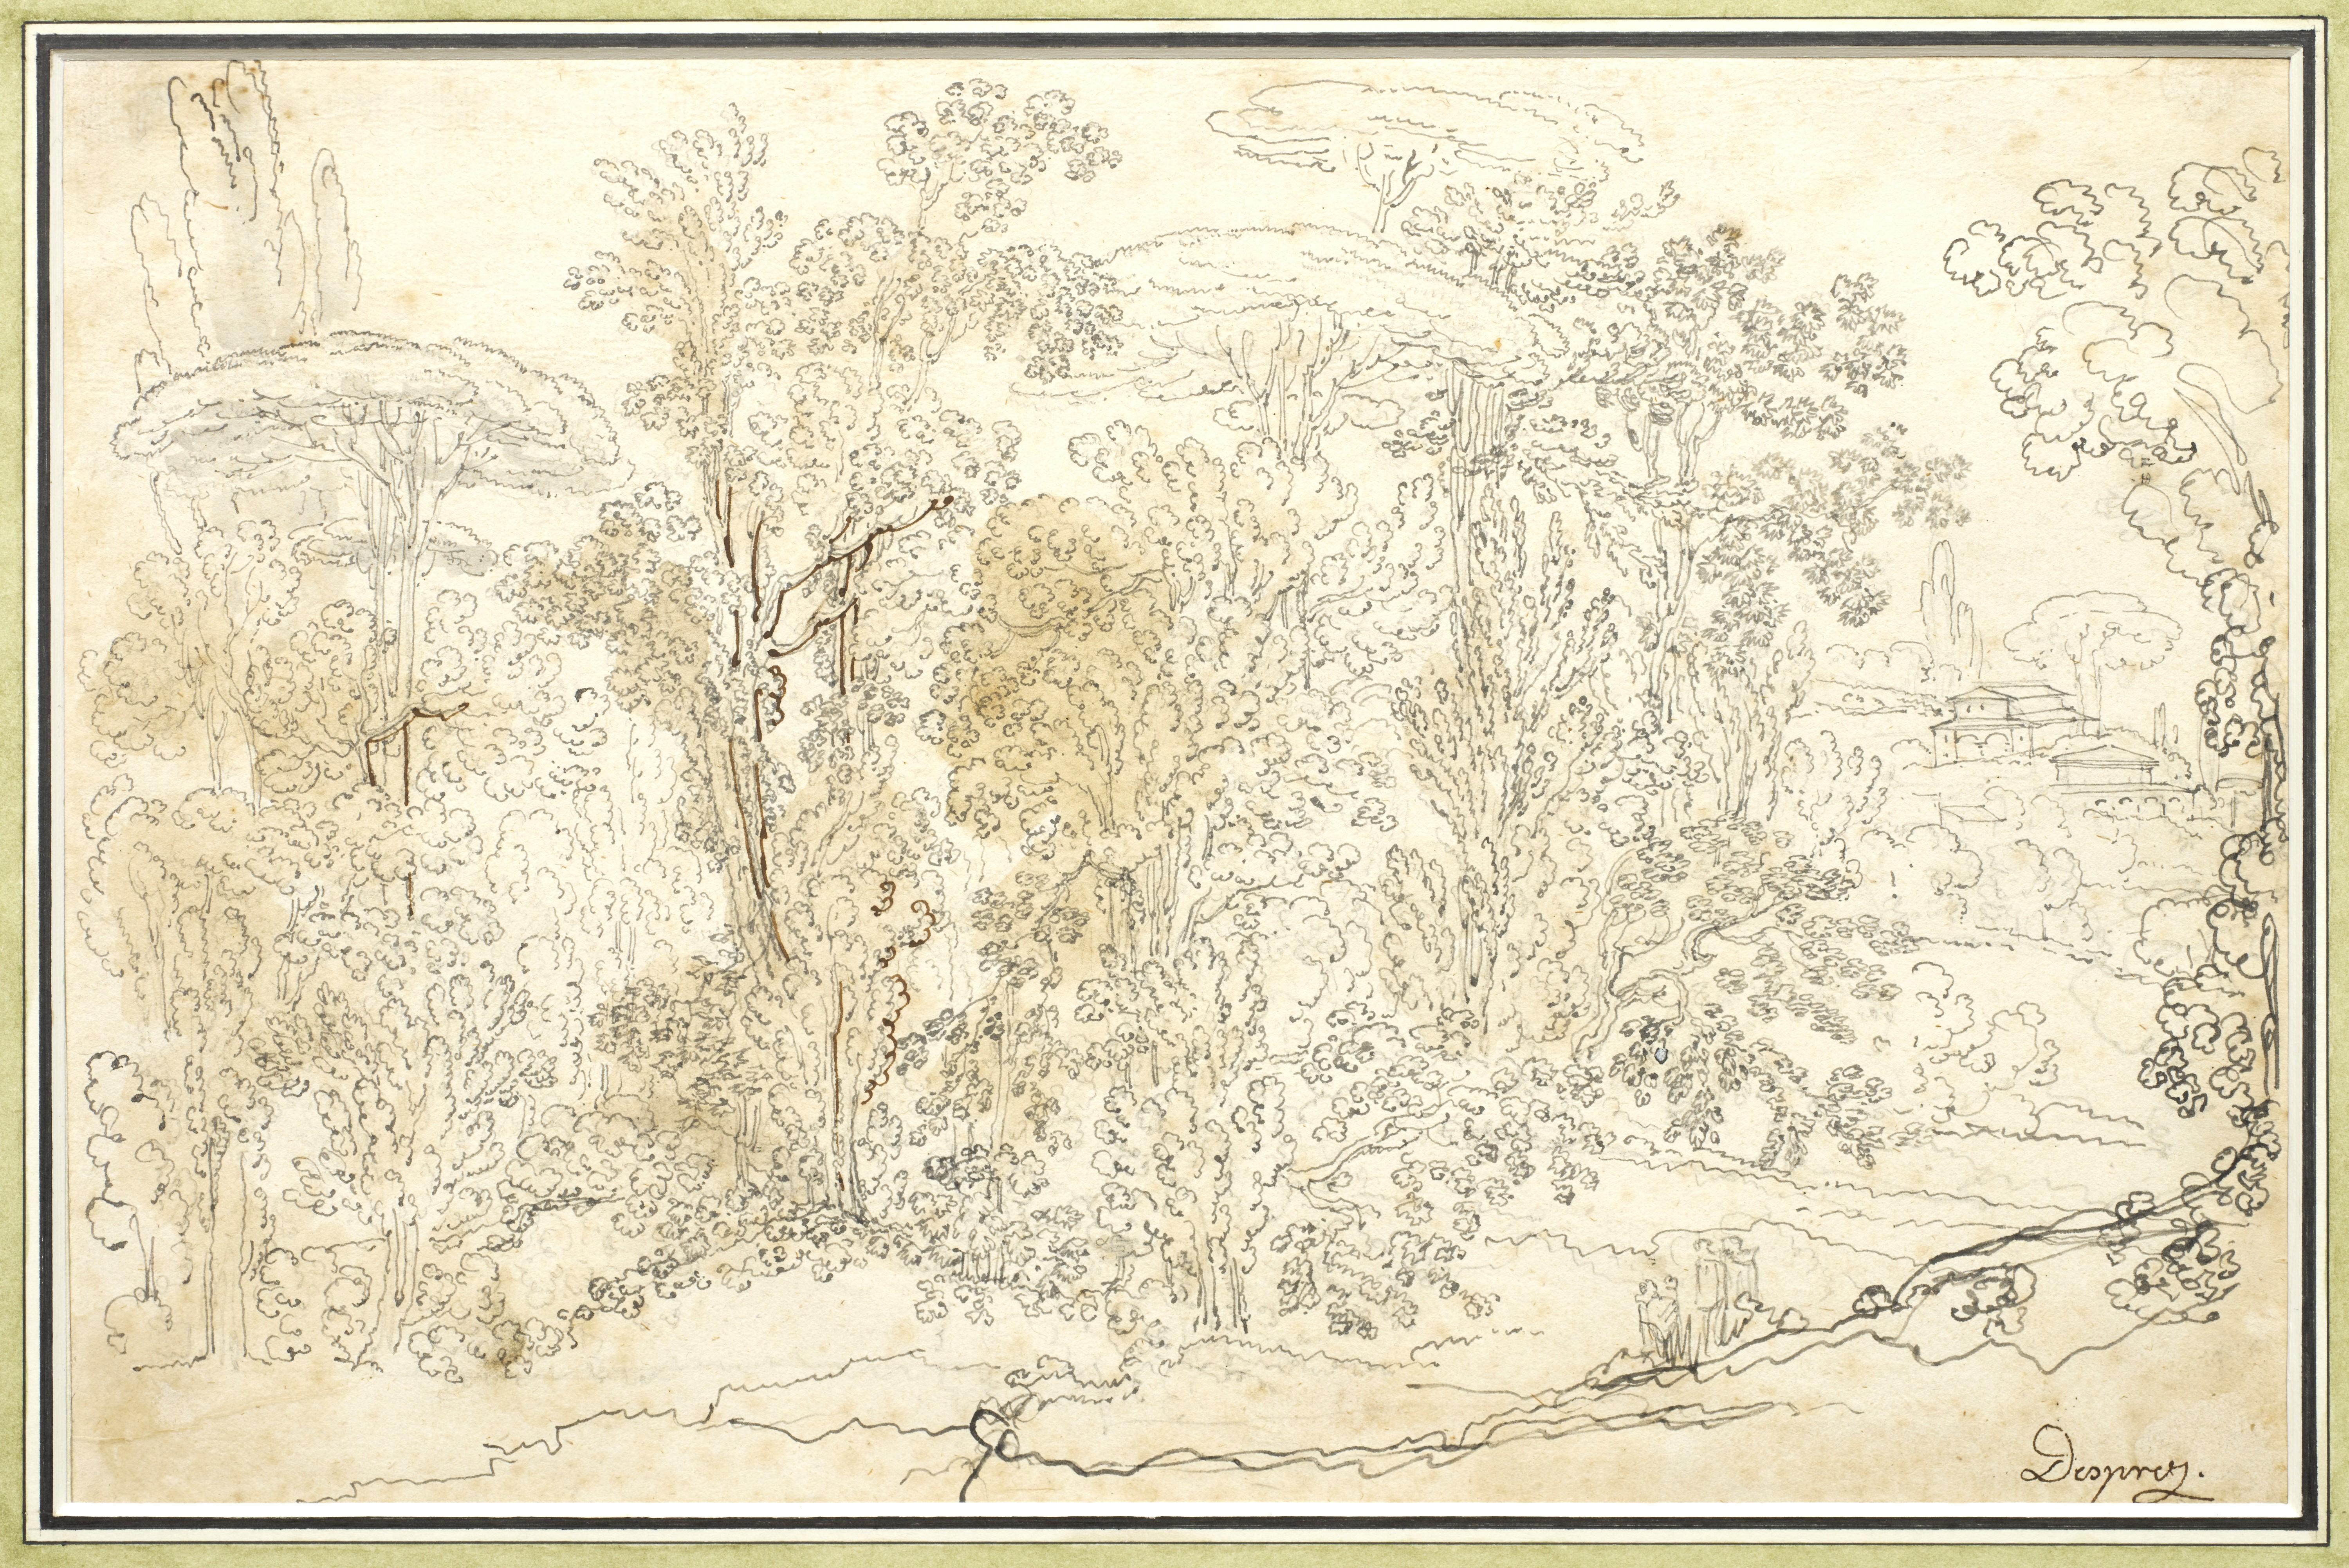 Diese Landschaft, die Louis-Jean Desprez um 1779 meisterhaft mit Feder und Lavierung ausgeführt hat, stellt wahrscheinlich eine Ansicht der römischen Landschaft dar. Die Behandlung der Bäume ähnelt sehr der von zwei Stichen, die Desprez in Rom